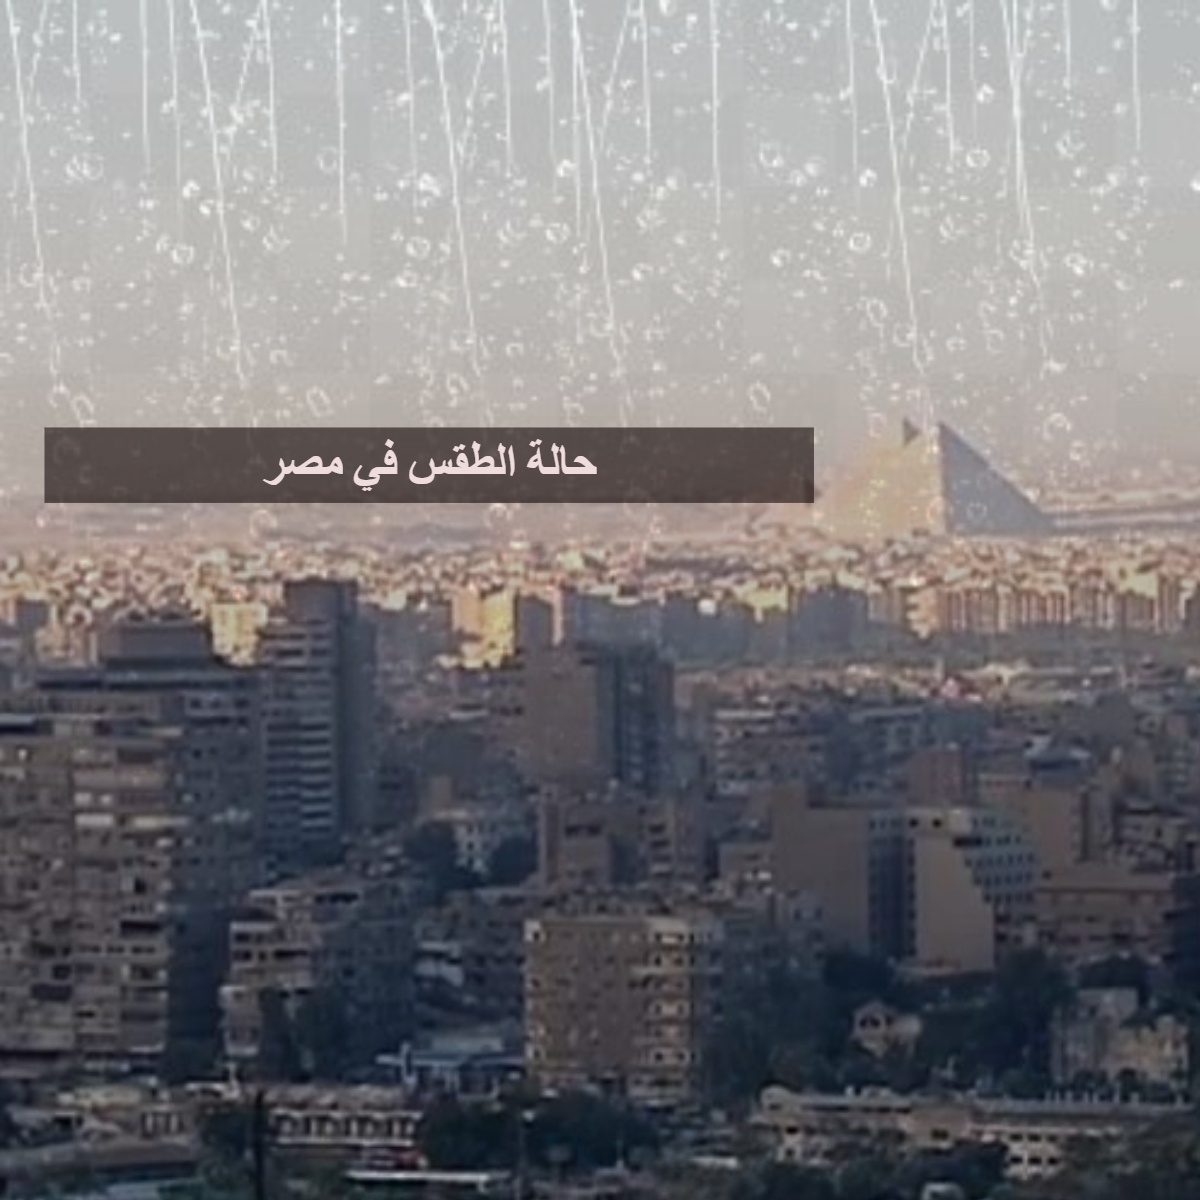 حالة الطقس في مصر غدًا الاثنين وتحذيرات من هيئة الأرصاد الجوية وأماكن سقوط الأمطار 10-2-2019